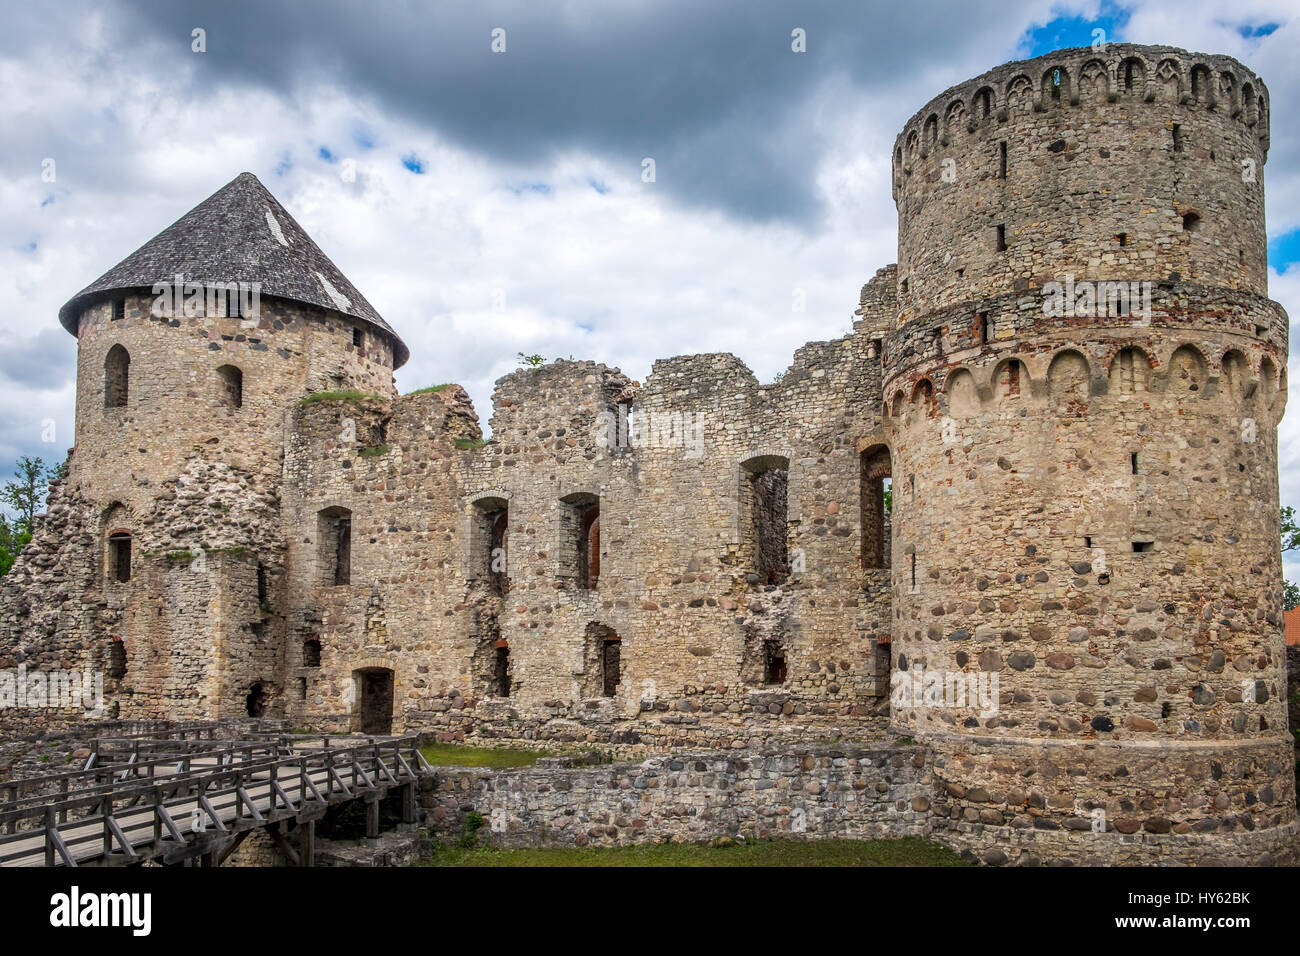 La Lettonie, Riga - CIRCA Juin 2014 : Le château de Cesis, (Wenden) en Lettonie Banque D'Images